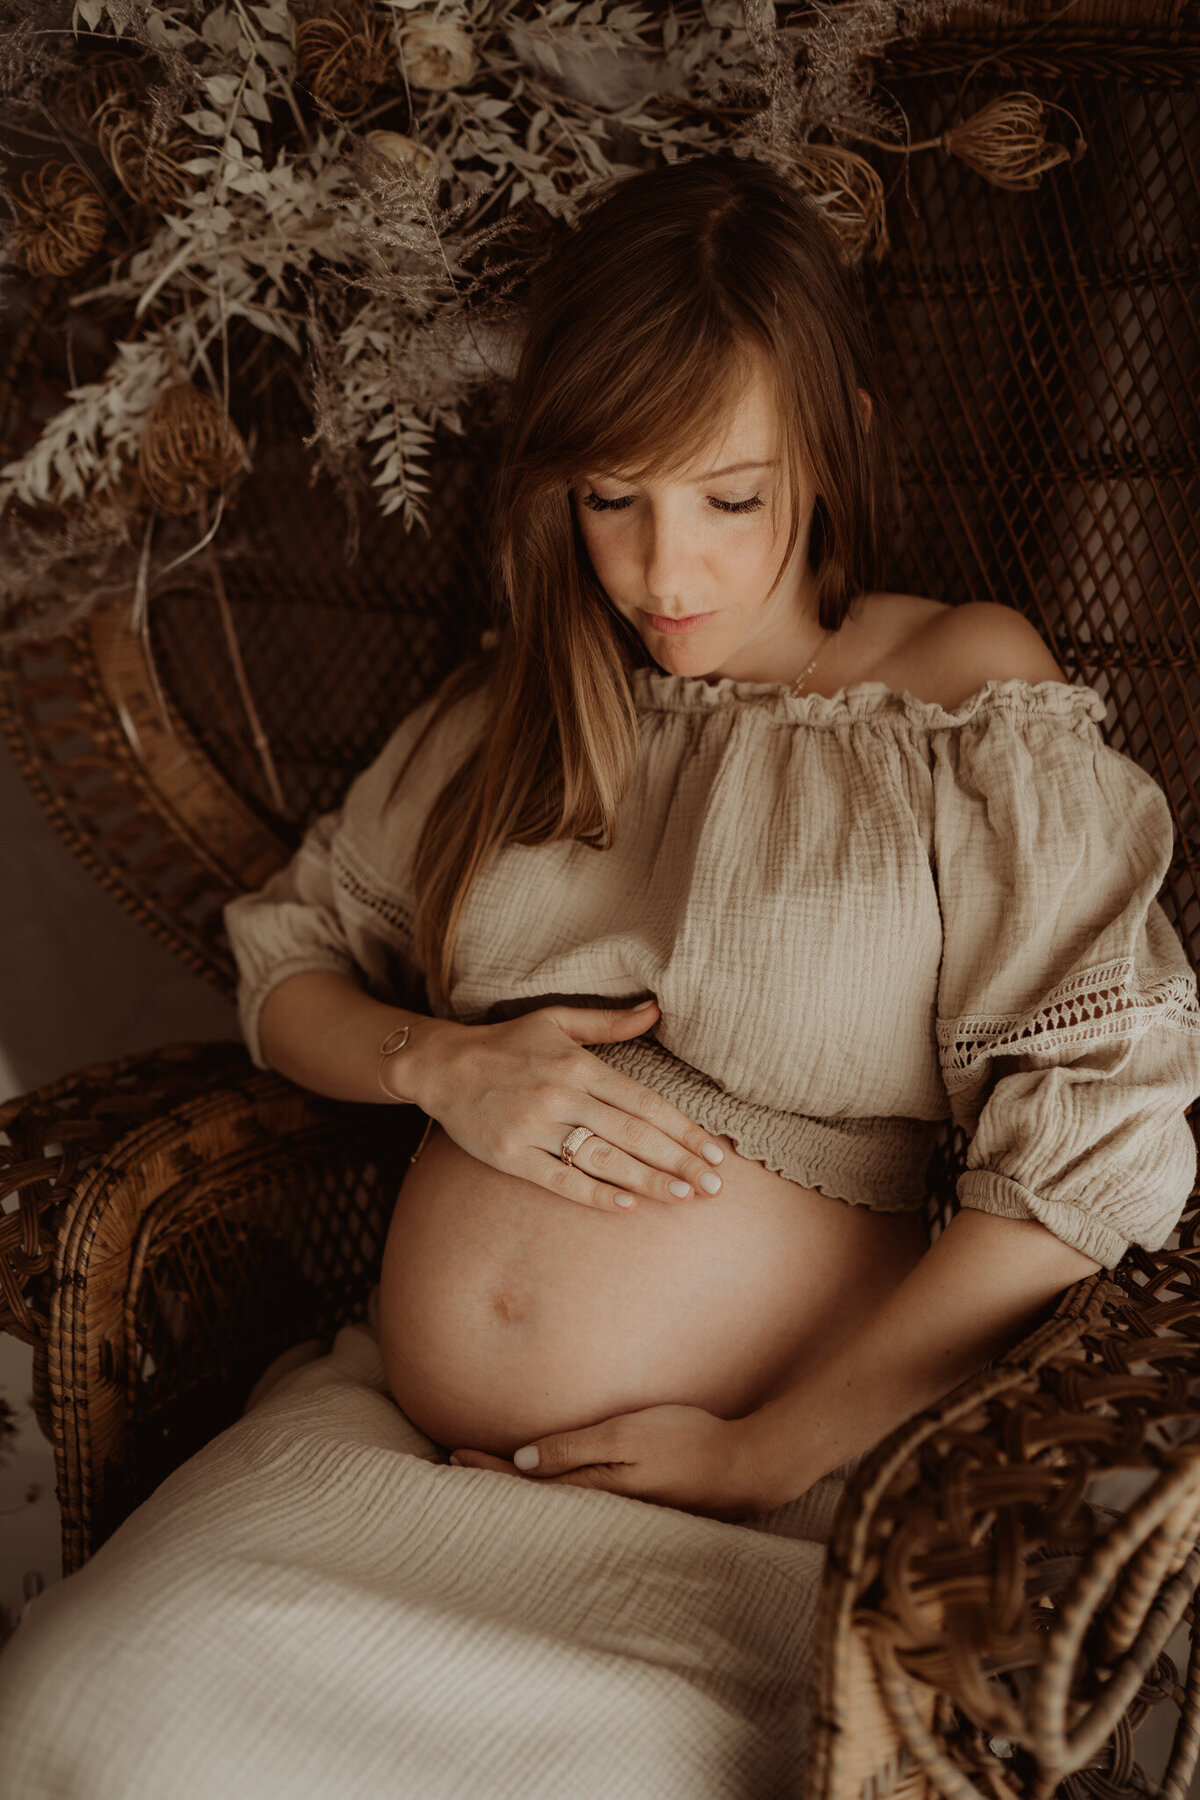 zwangerschapsshoot in fotostudio met bohemian vibes